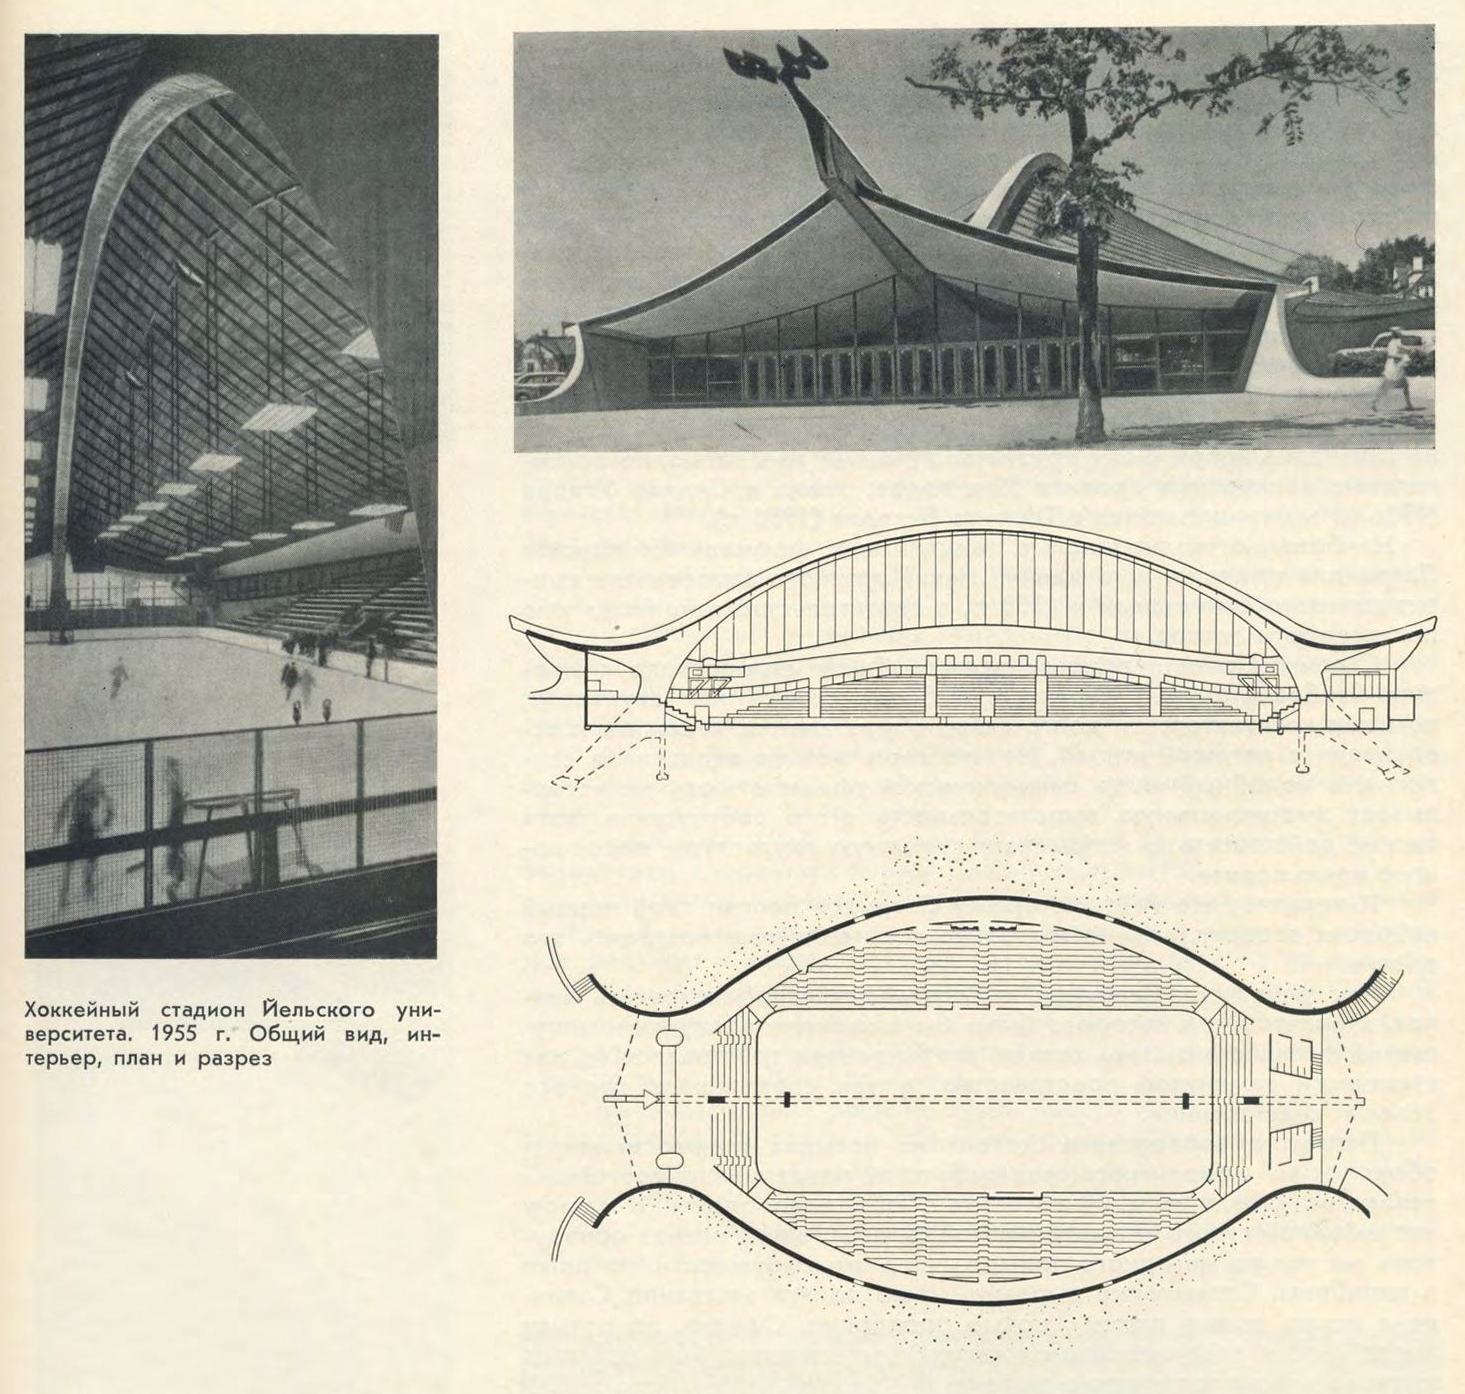 Хоккейный стадион Йельского университета. 1955 г. Общий вид, интерьер, план и разрез